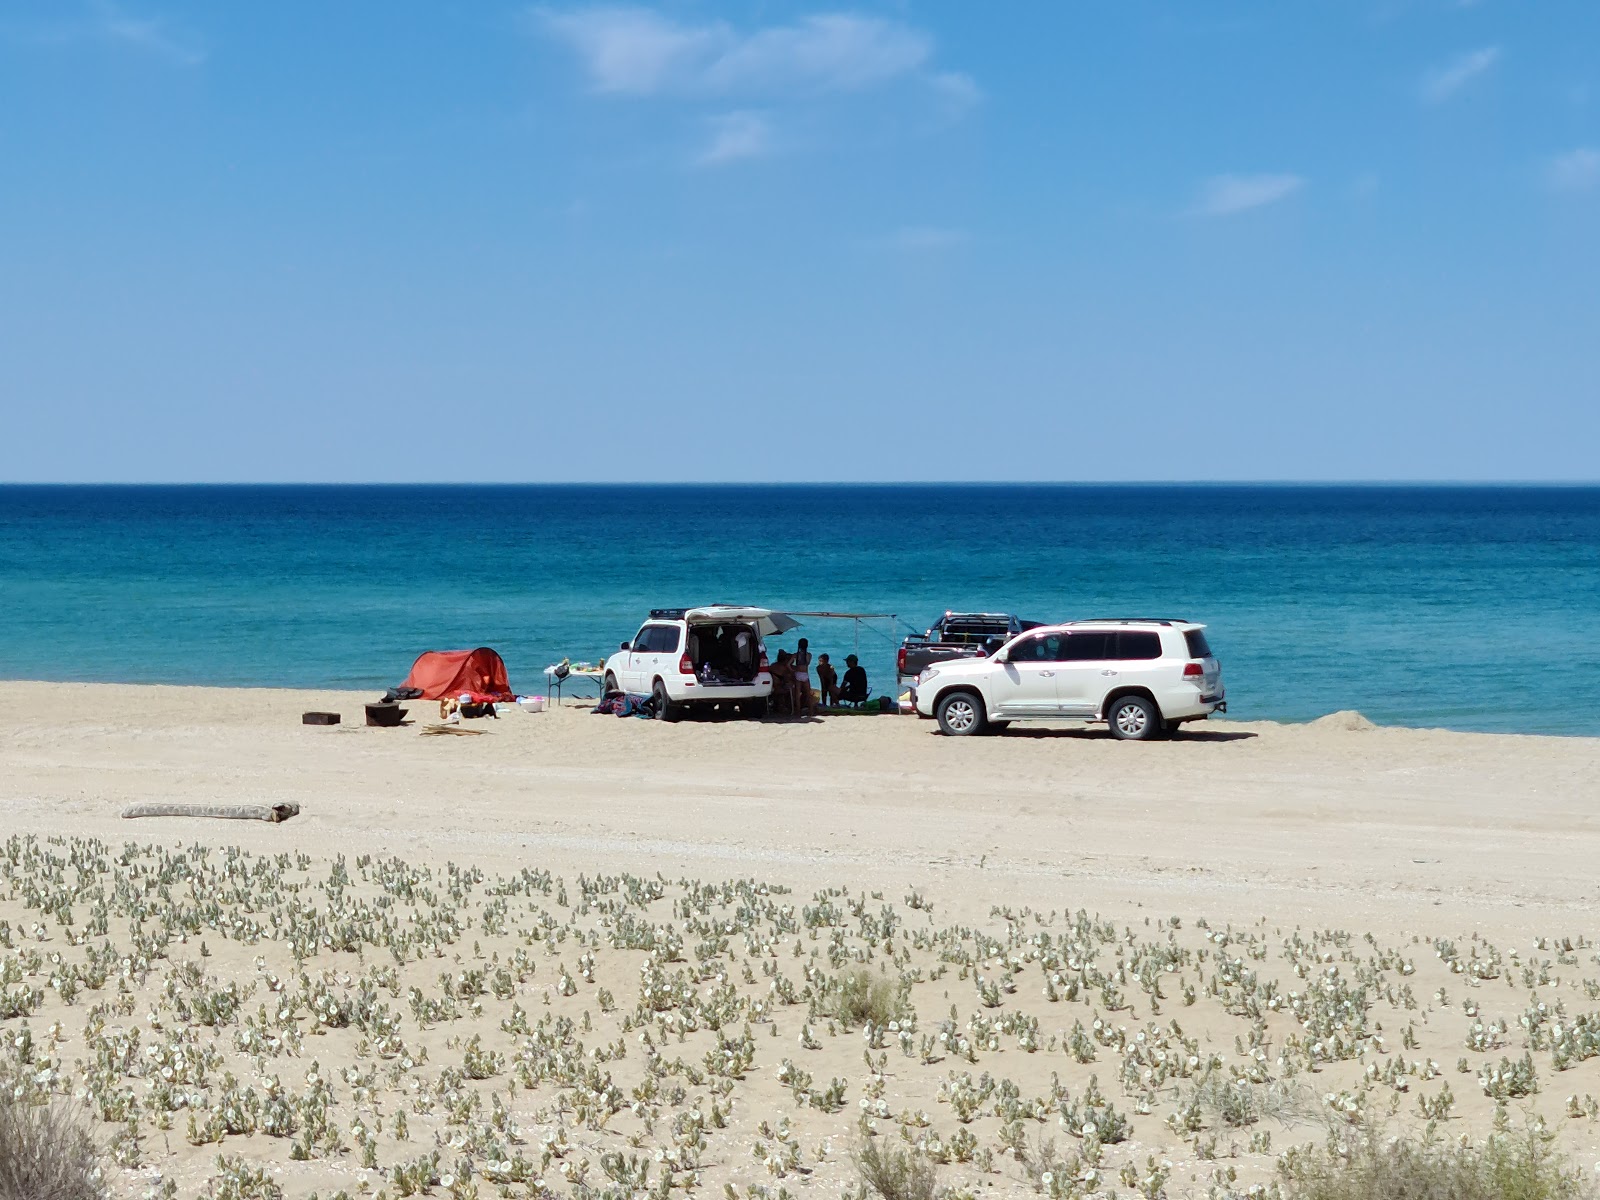 Zdjęcie Alau beach - popularne miejsce wśród znawców relaksu